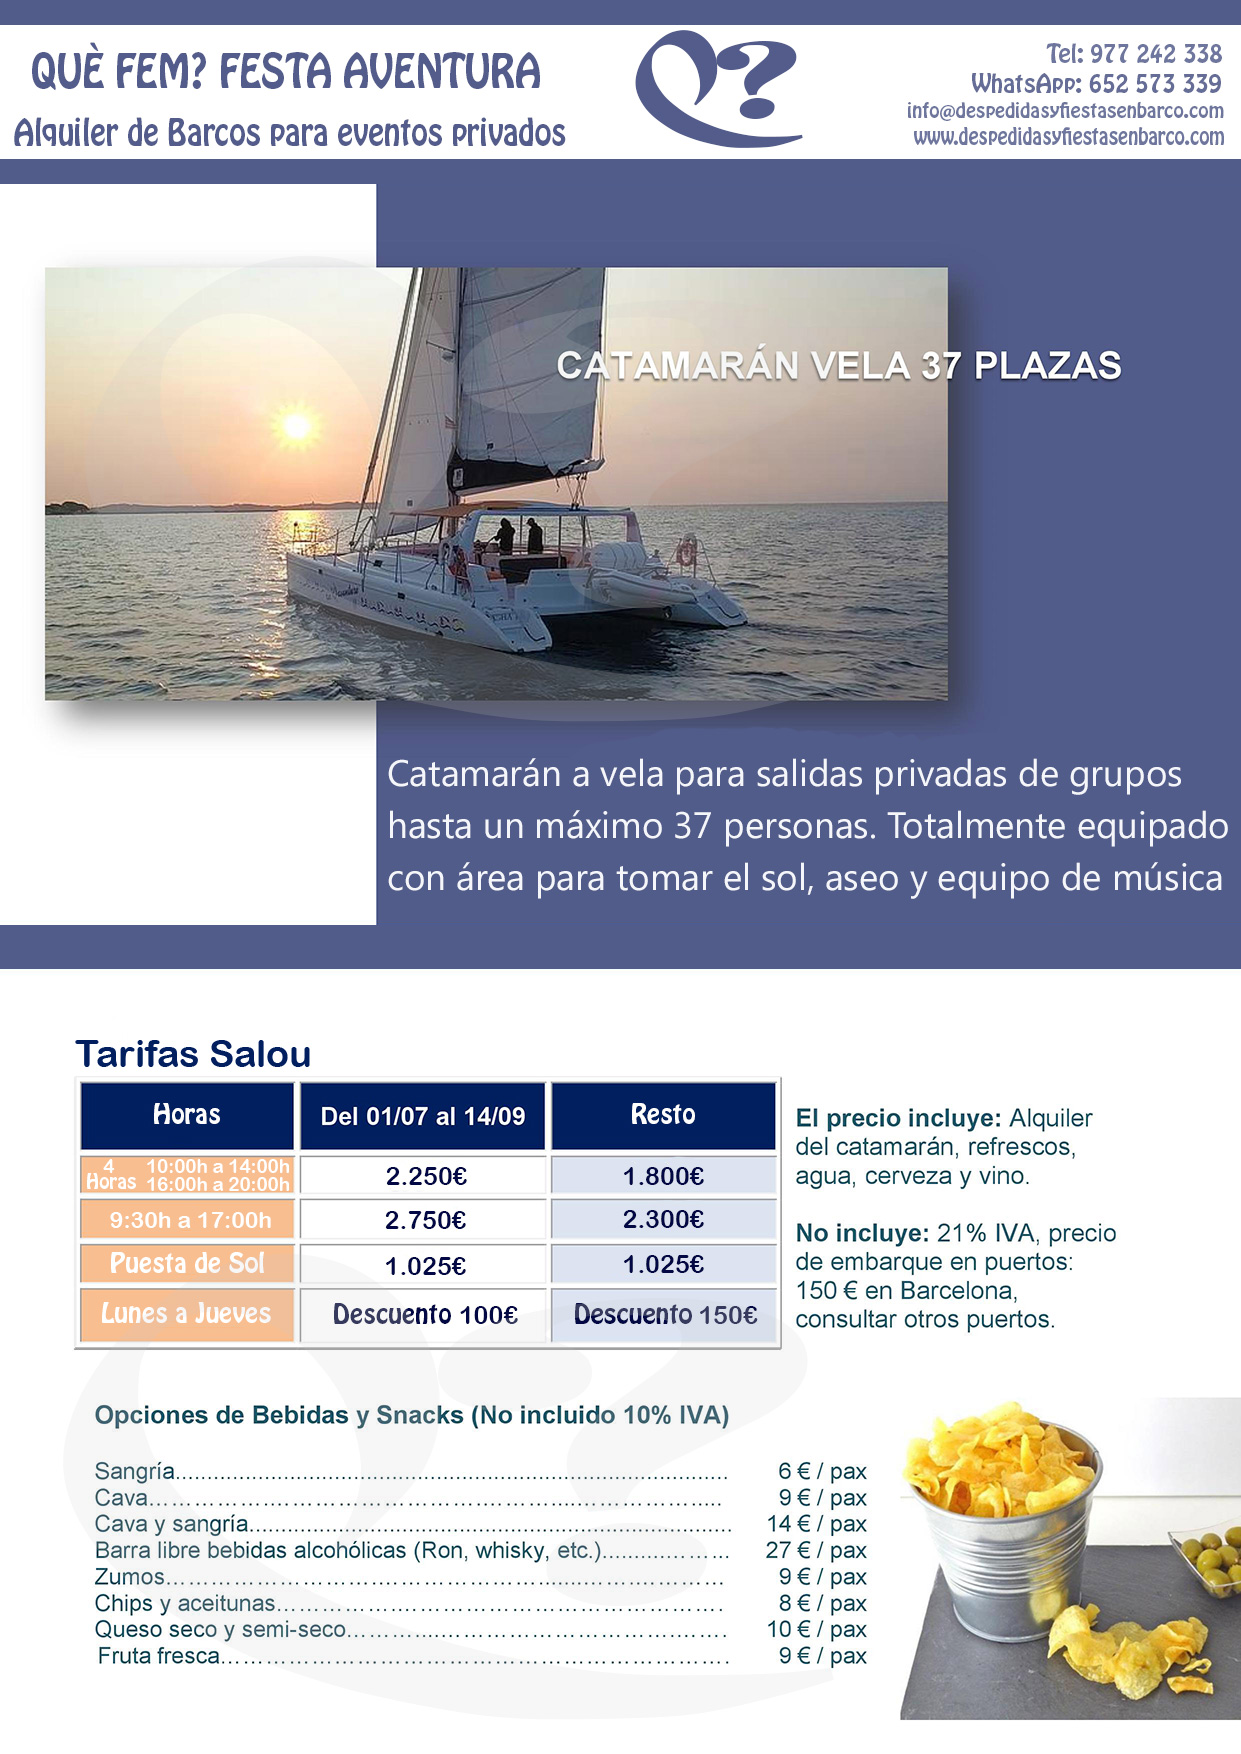 Información Alquiler de Barcos para fiestas privadas en Tarragona, Salou y Cambrils